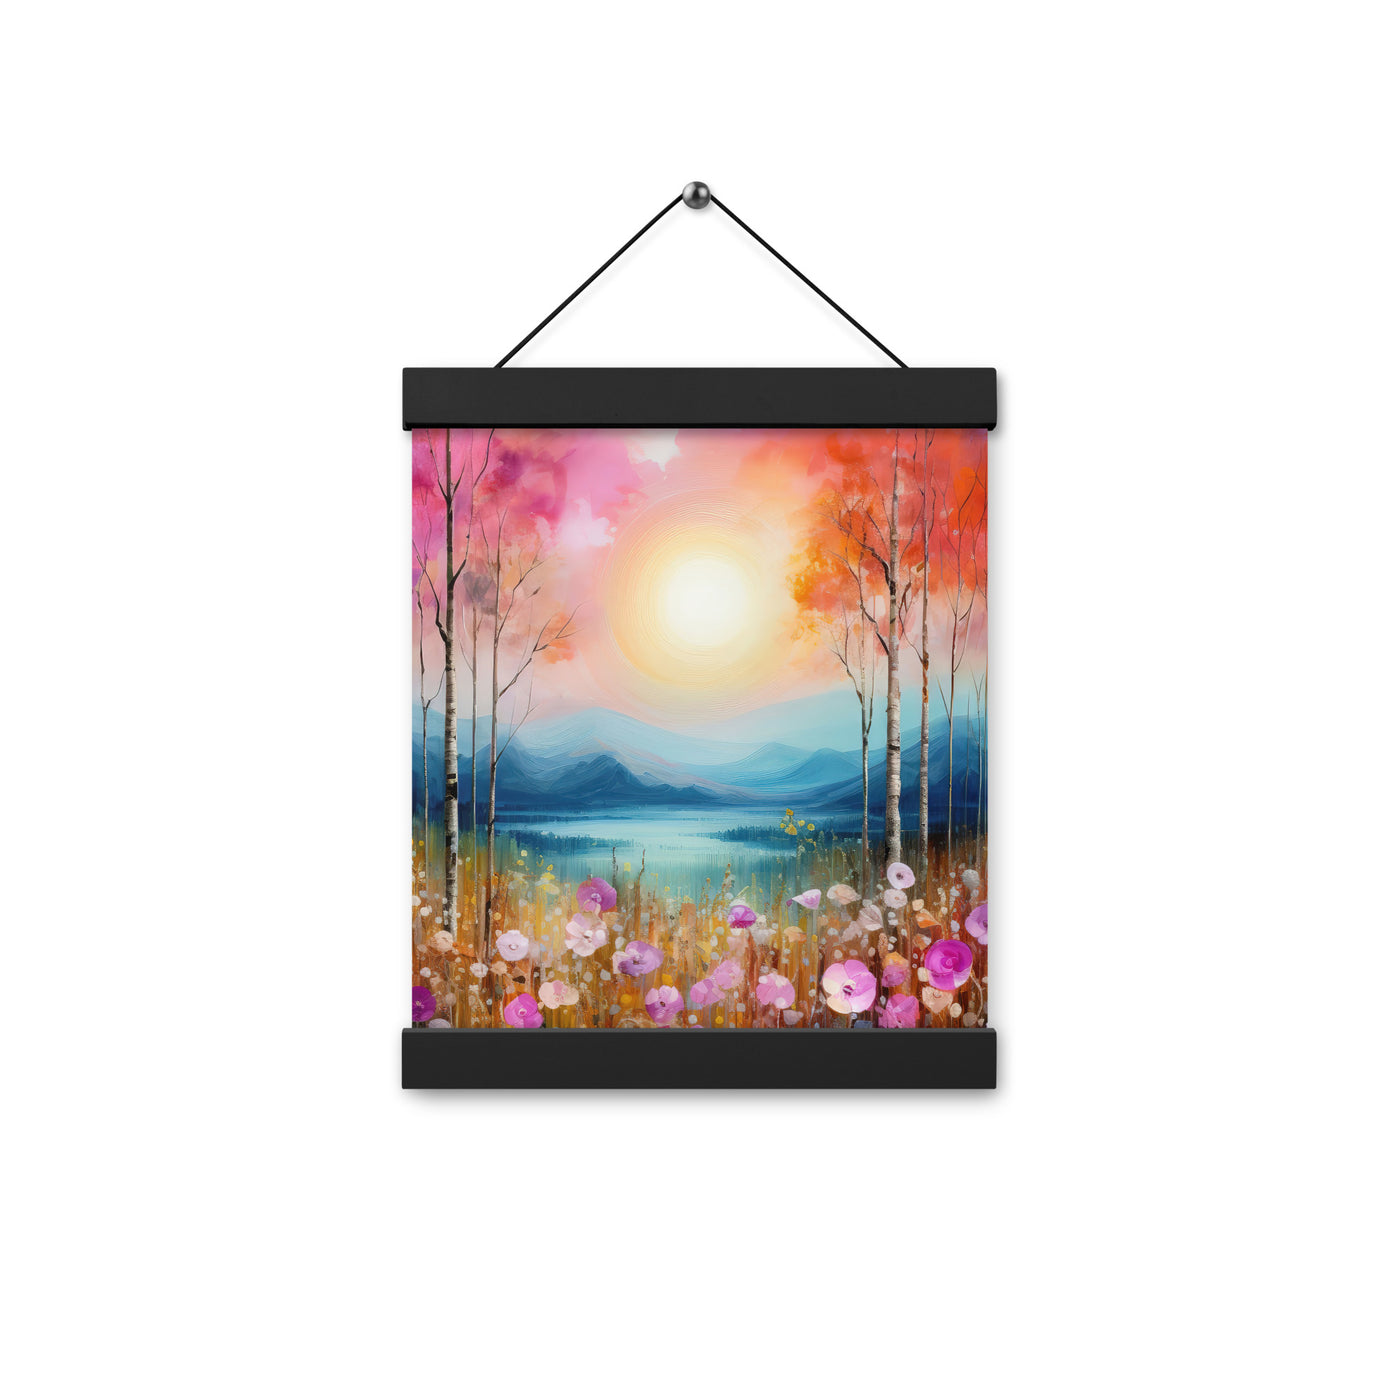 Berge, See, pinke Bäume und Blumen - Malerei - Premium Poster mit Aufhängung berge xxx 20.3 x 25.4 cm